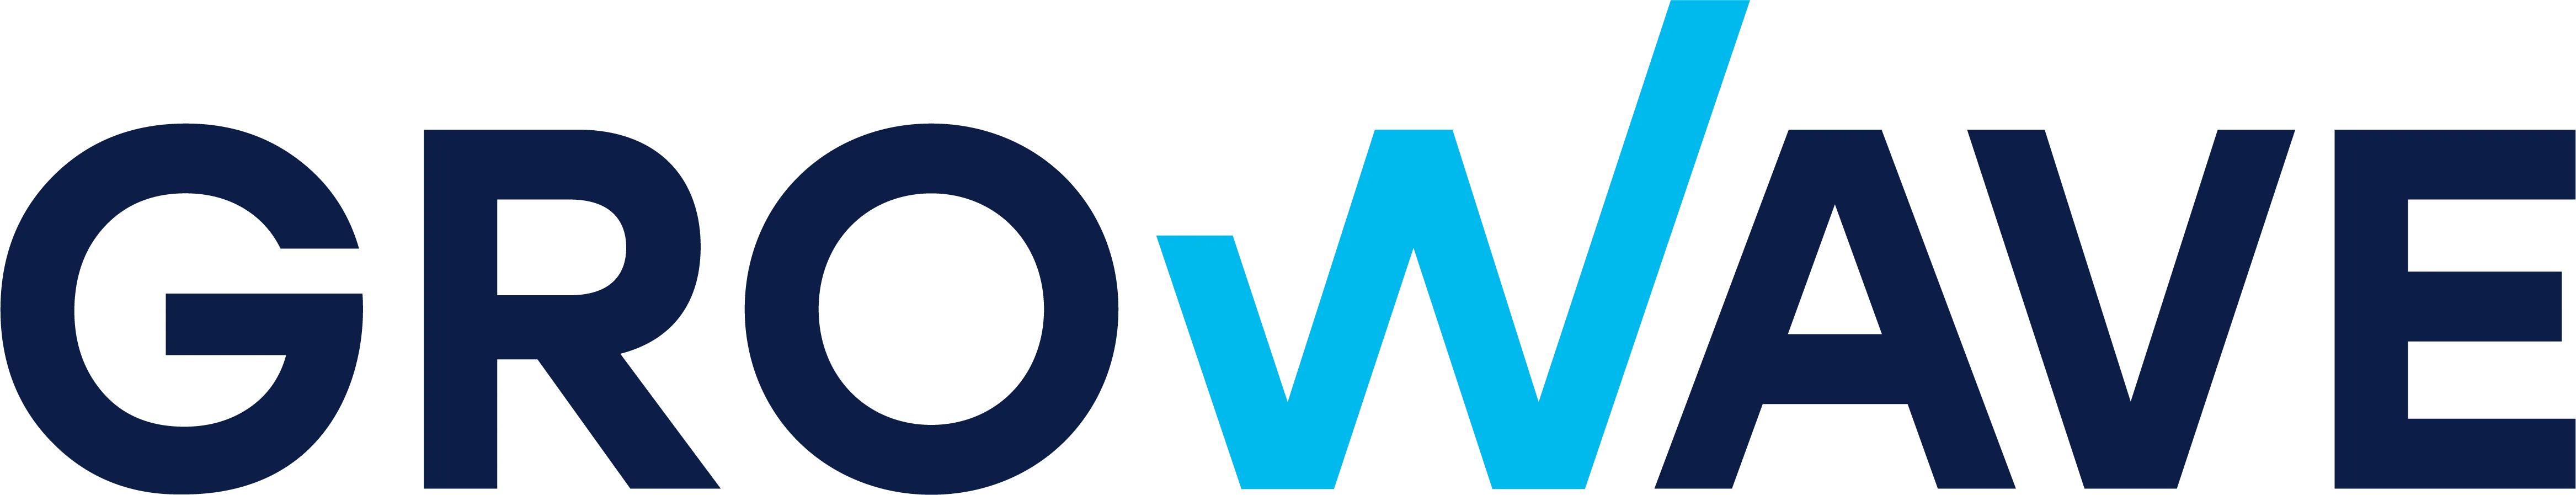 Growave logo